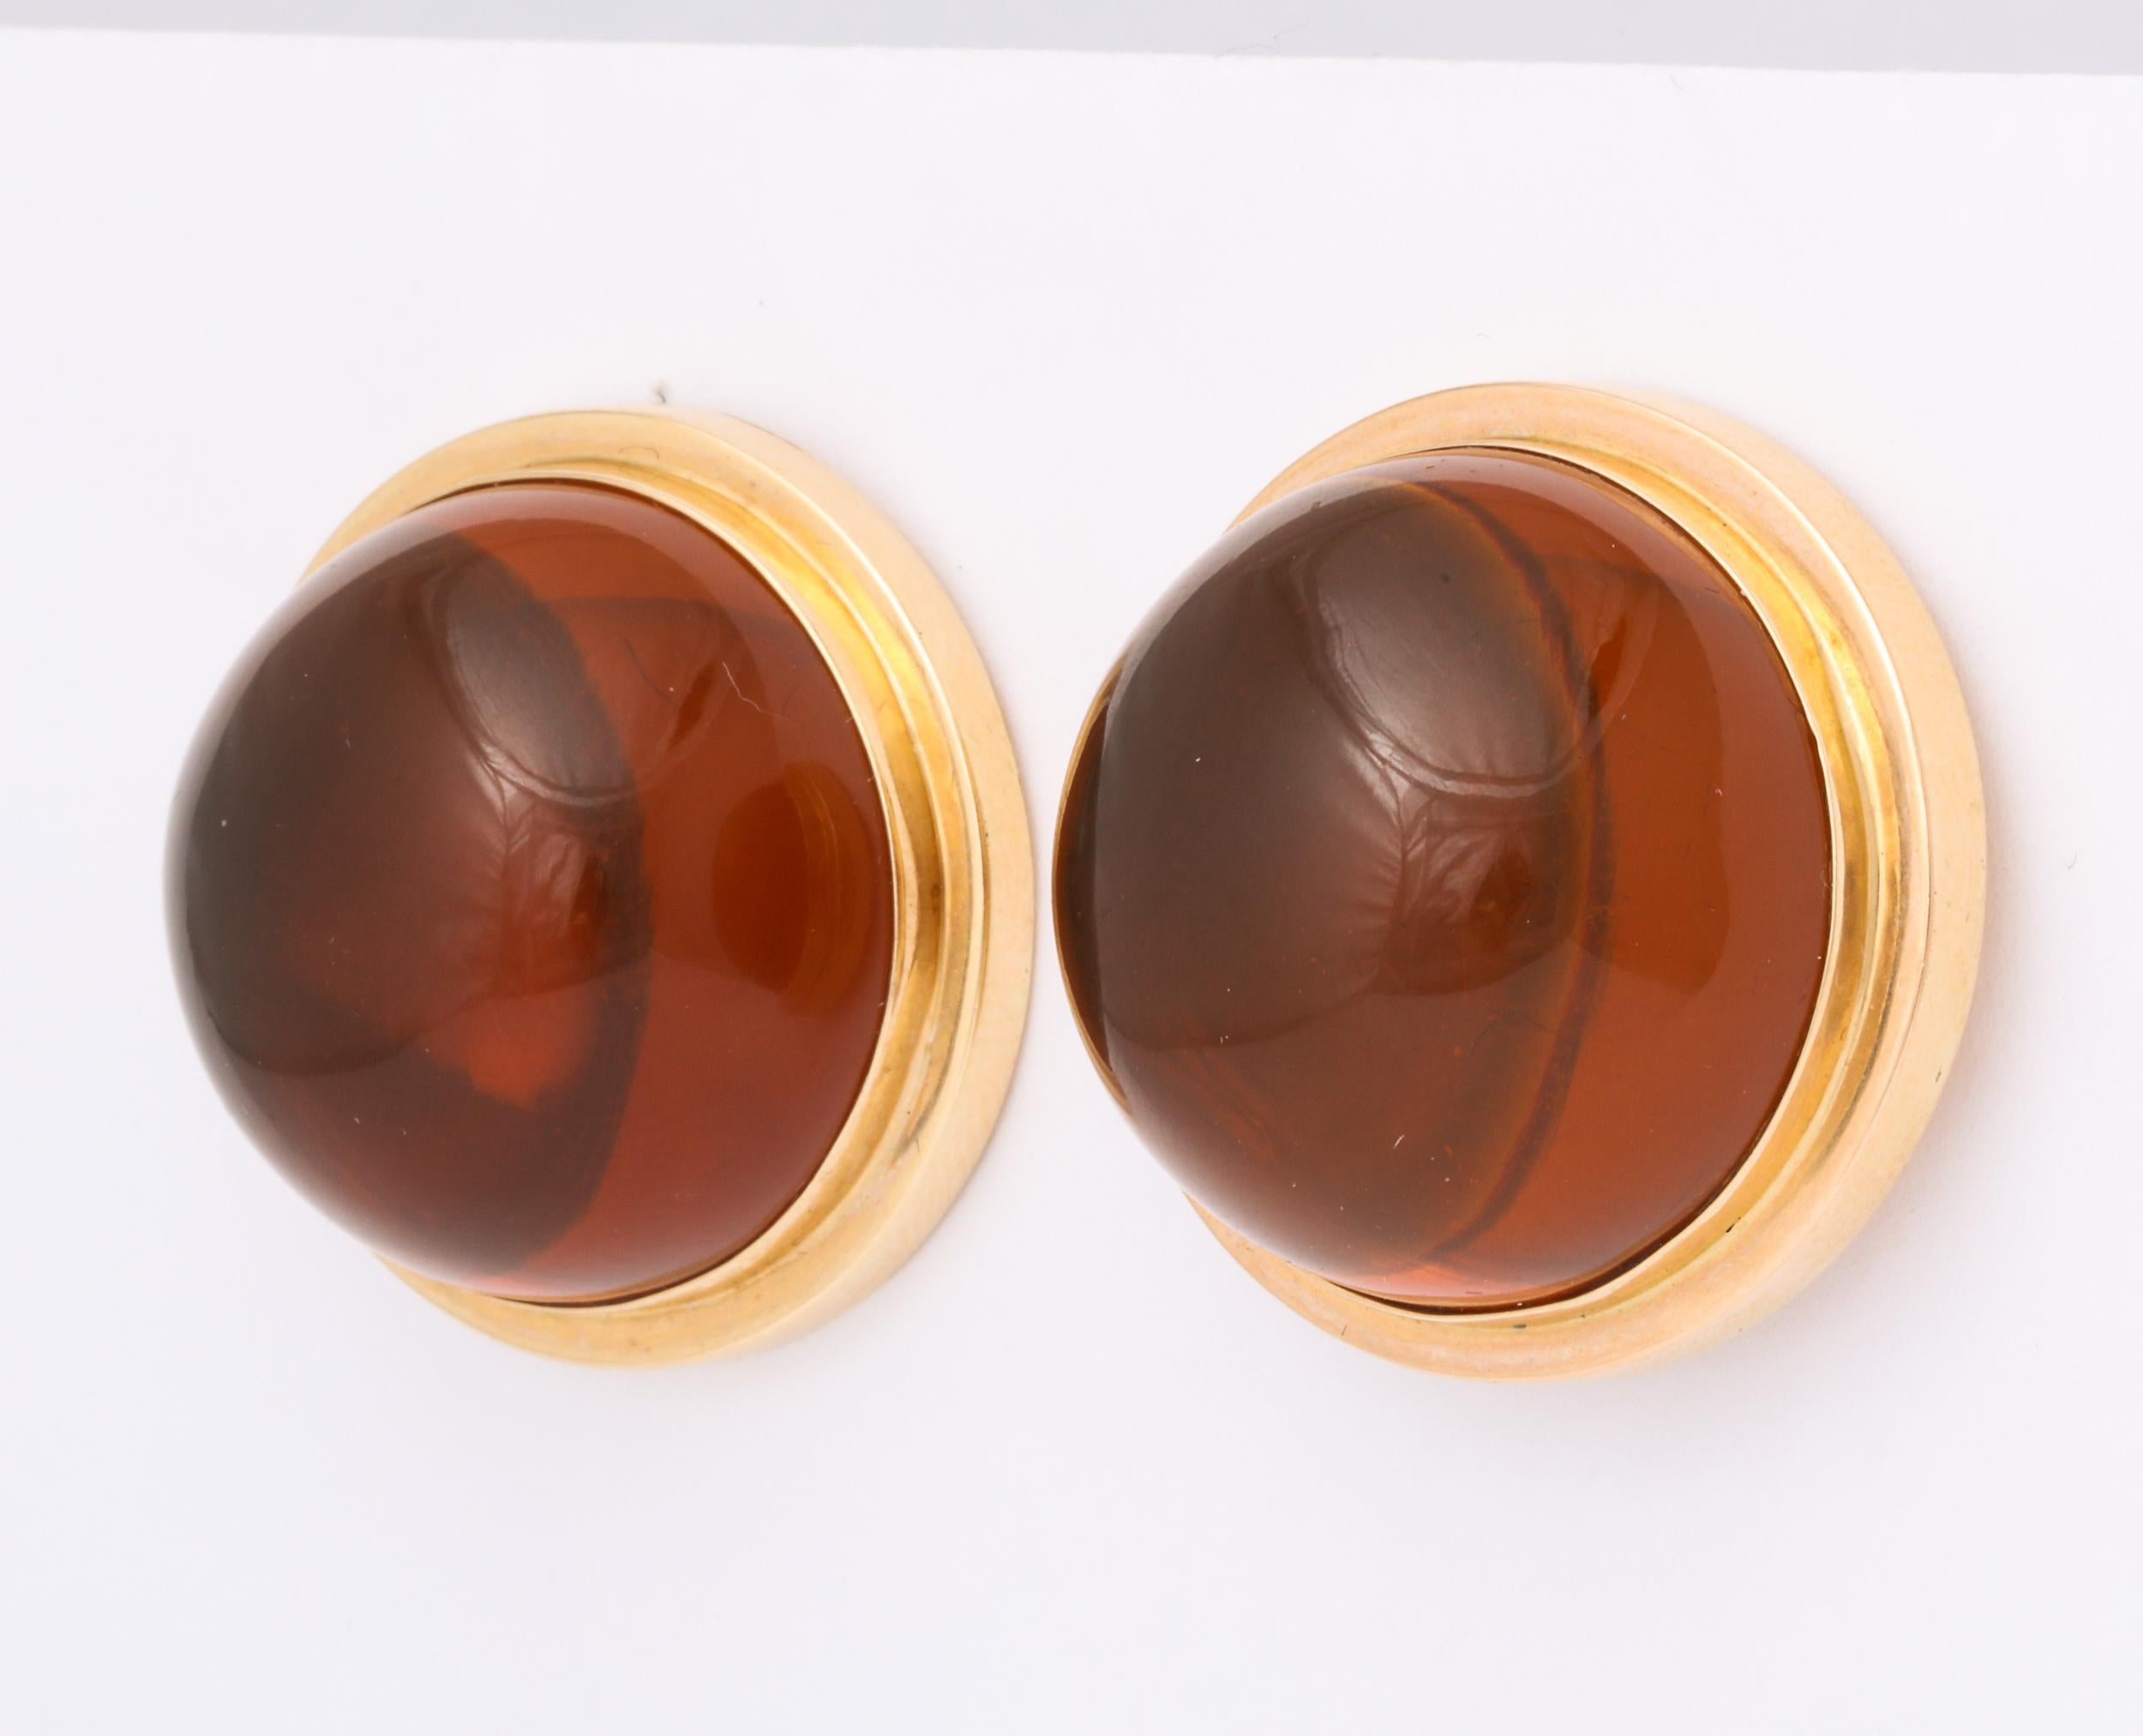  Perles d'ambre reconstituées et polies, montées en double échelon   lunette en or jaune 18 carats.  Clip on avec Omega Backs. Marqué 18kt.  A grande échelle -  Les perles mesurent 26 mm. Un look audacieux et très riche.  Peut être converti en